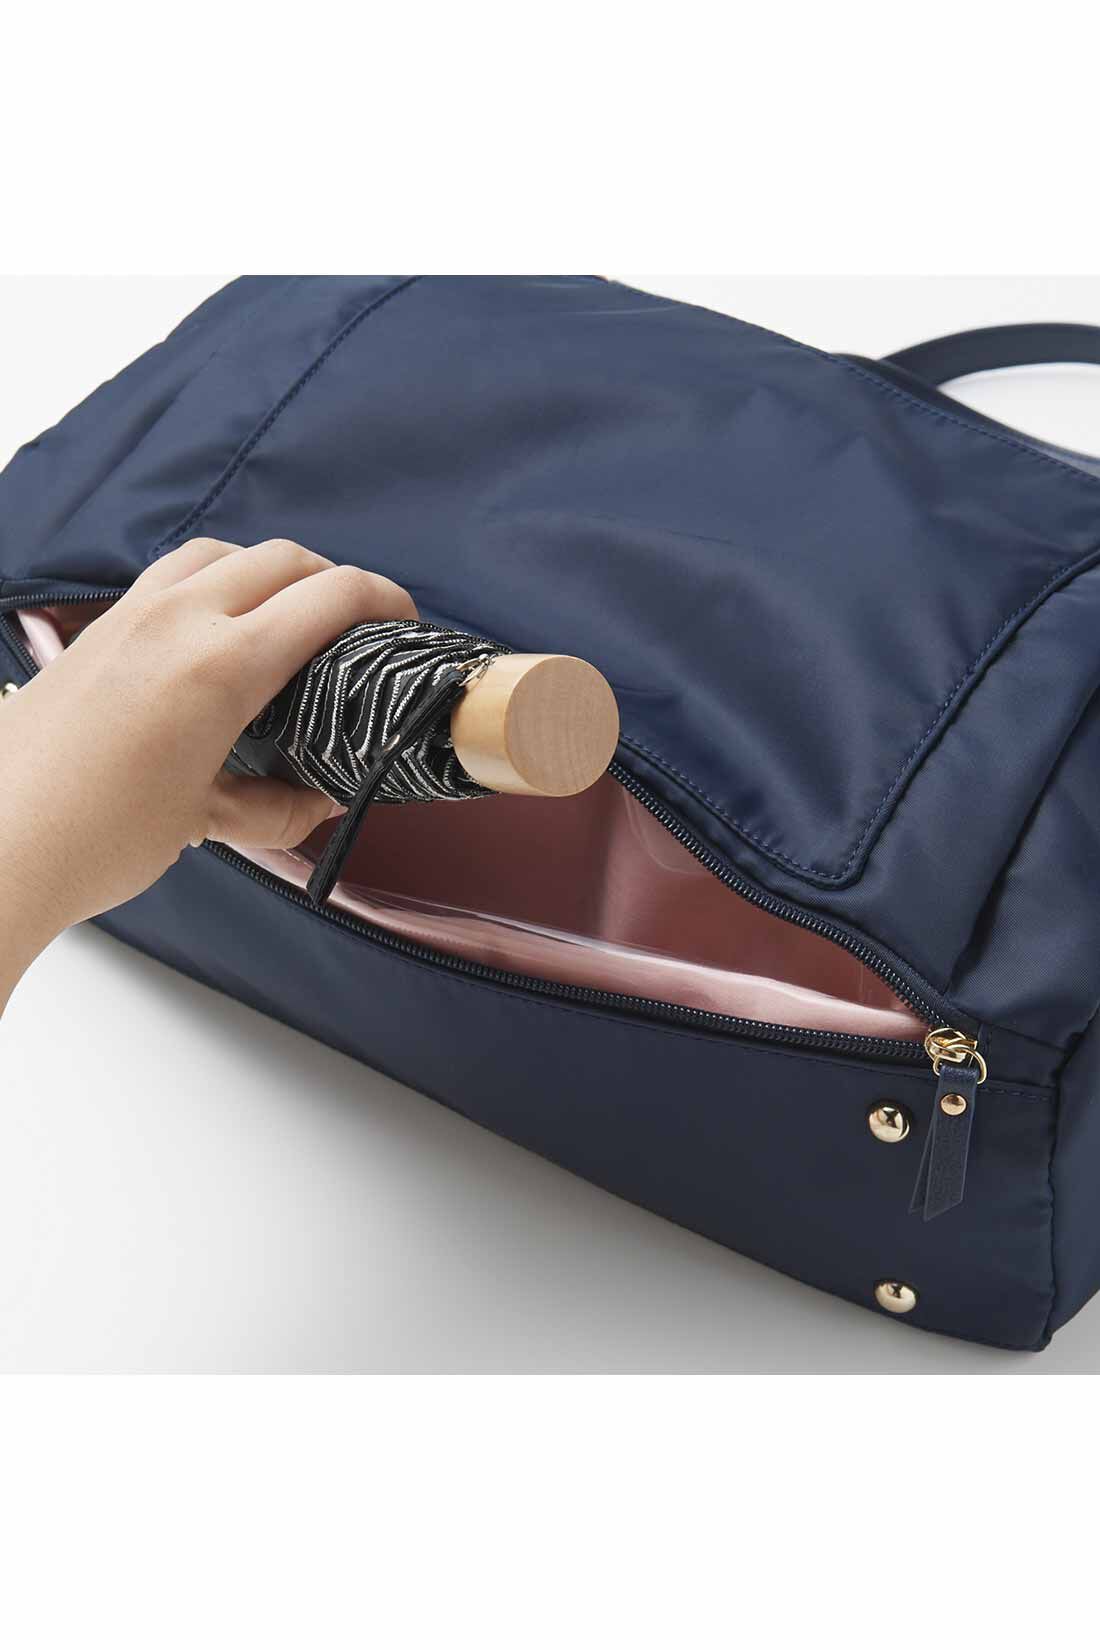 DRECO by IEDIT|【3～10日でお届け】IEDIT[イディット]　ことりっぷとコラボ 旅のプロのアイデアを詰め込んだ軽量バッグ〈ネイビー〉|底面の隠しポケットは、傘やペットボトルなど、濡れたものを入れてもOKなビニール仕様。